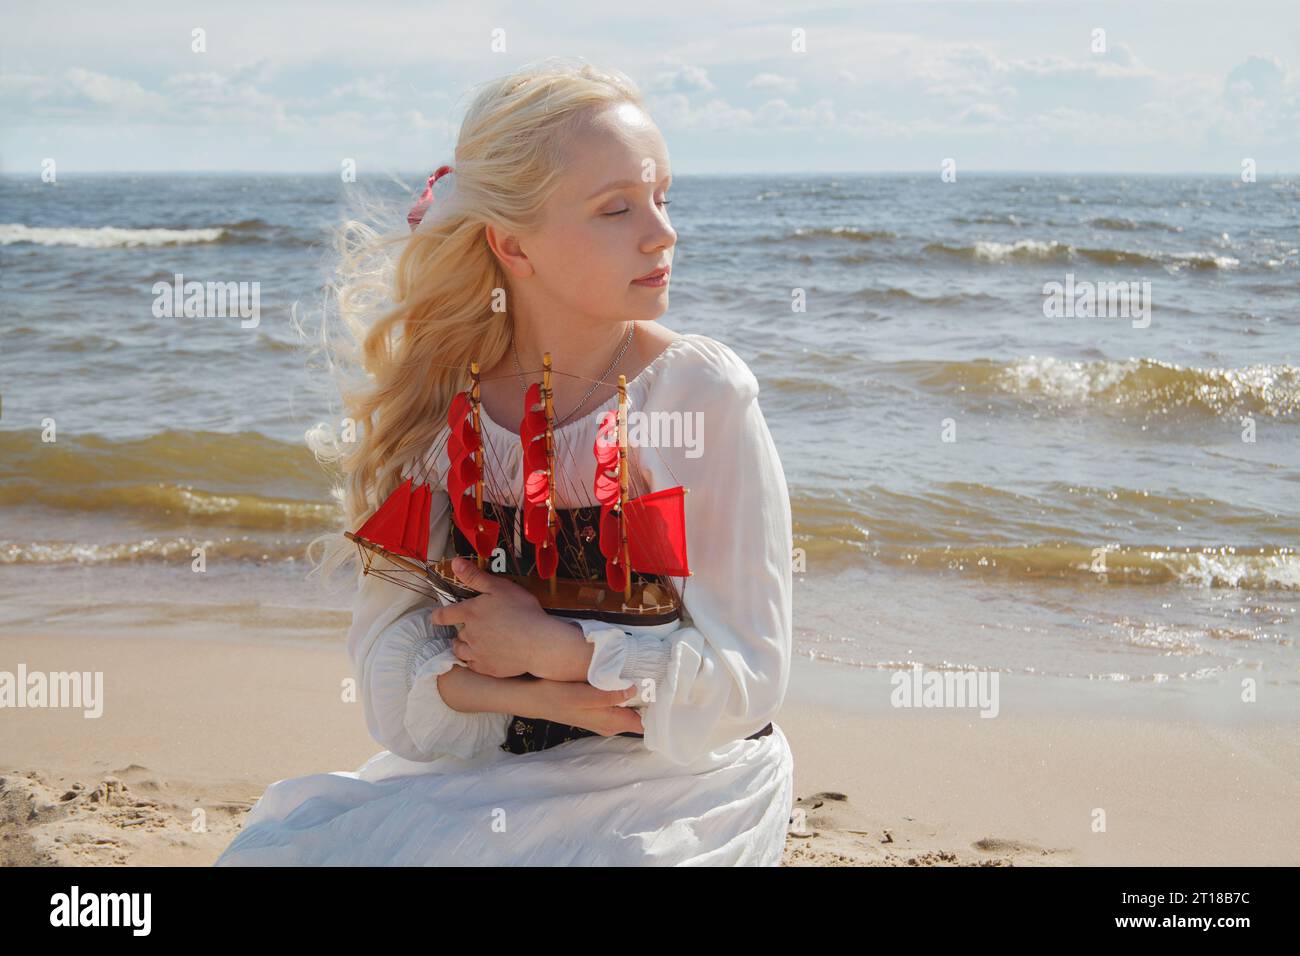 Vacanza romantica. Giovane donna con i capelli biondi seduta sulla spiaggia di mare, ritratto all'aperto Foto Stock